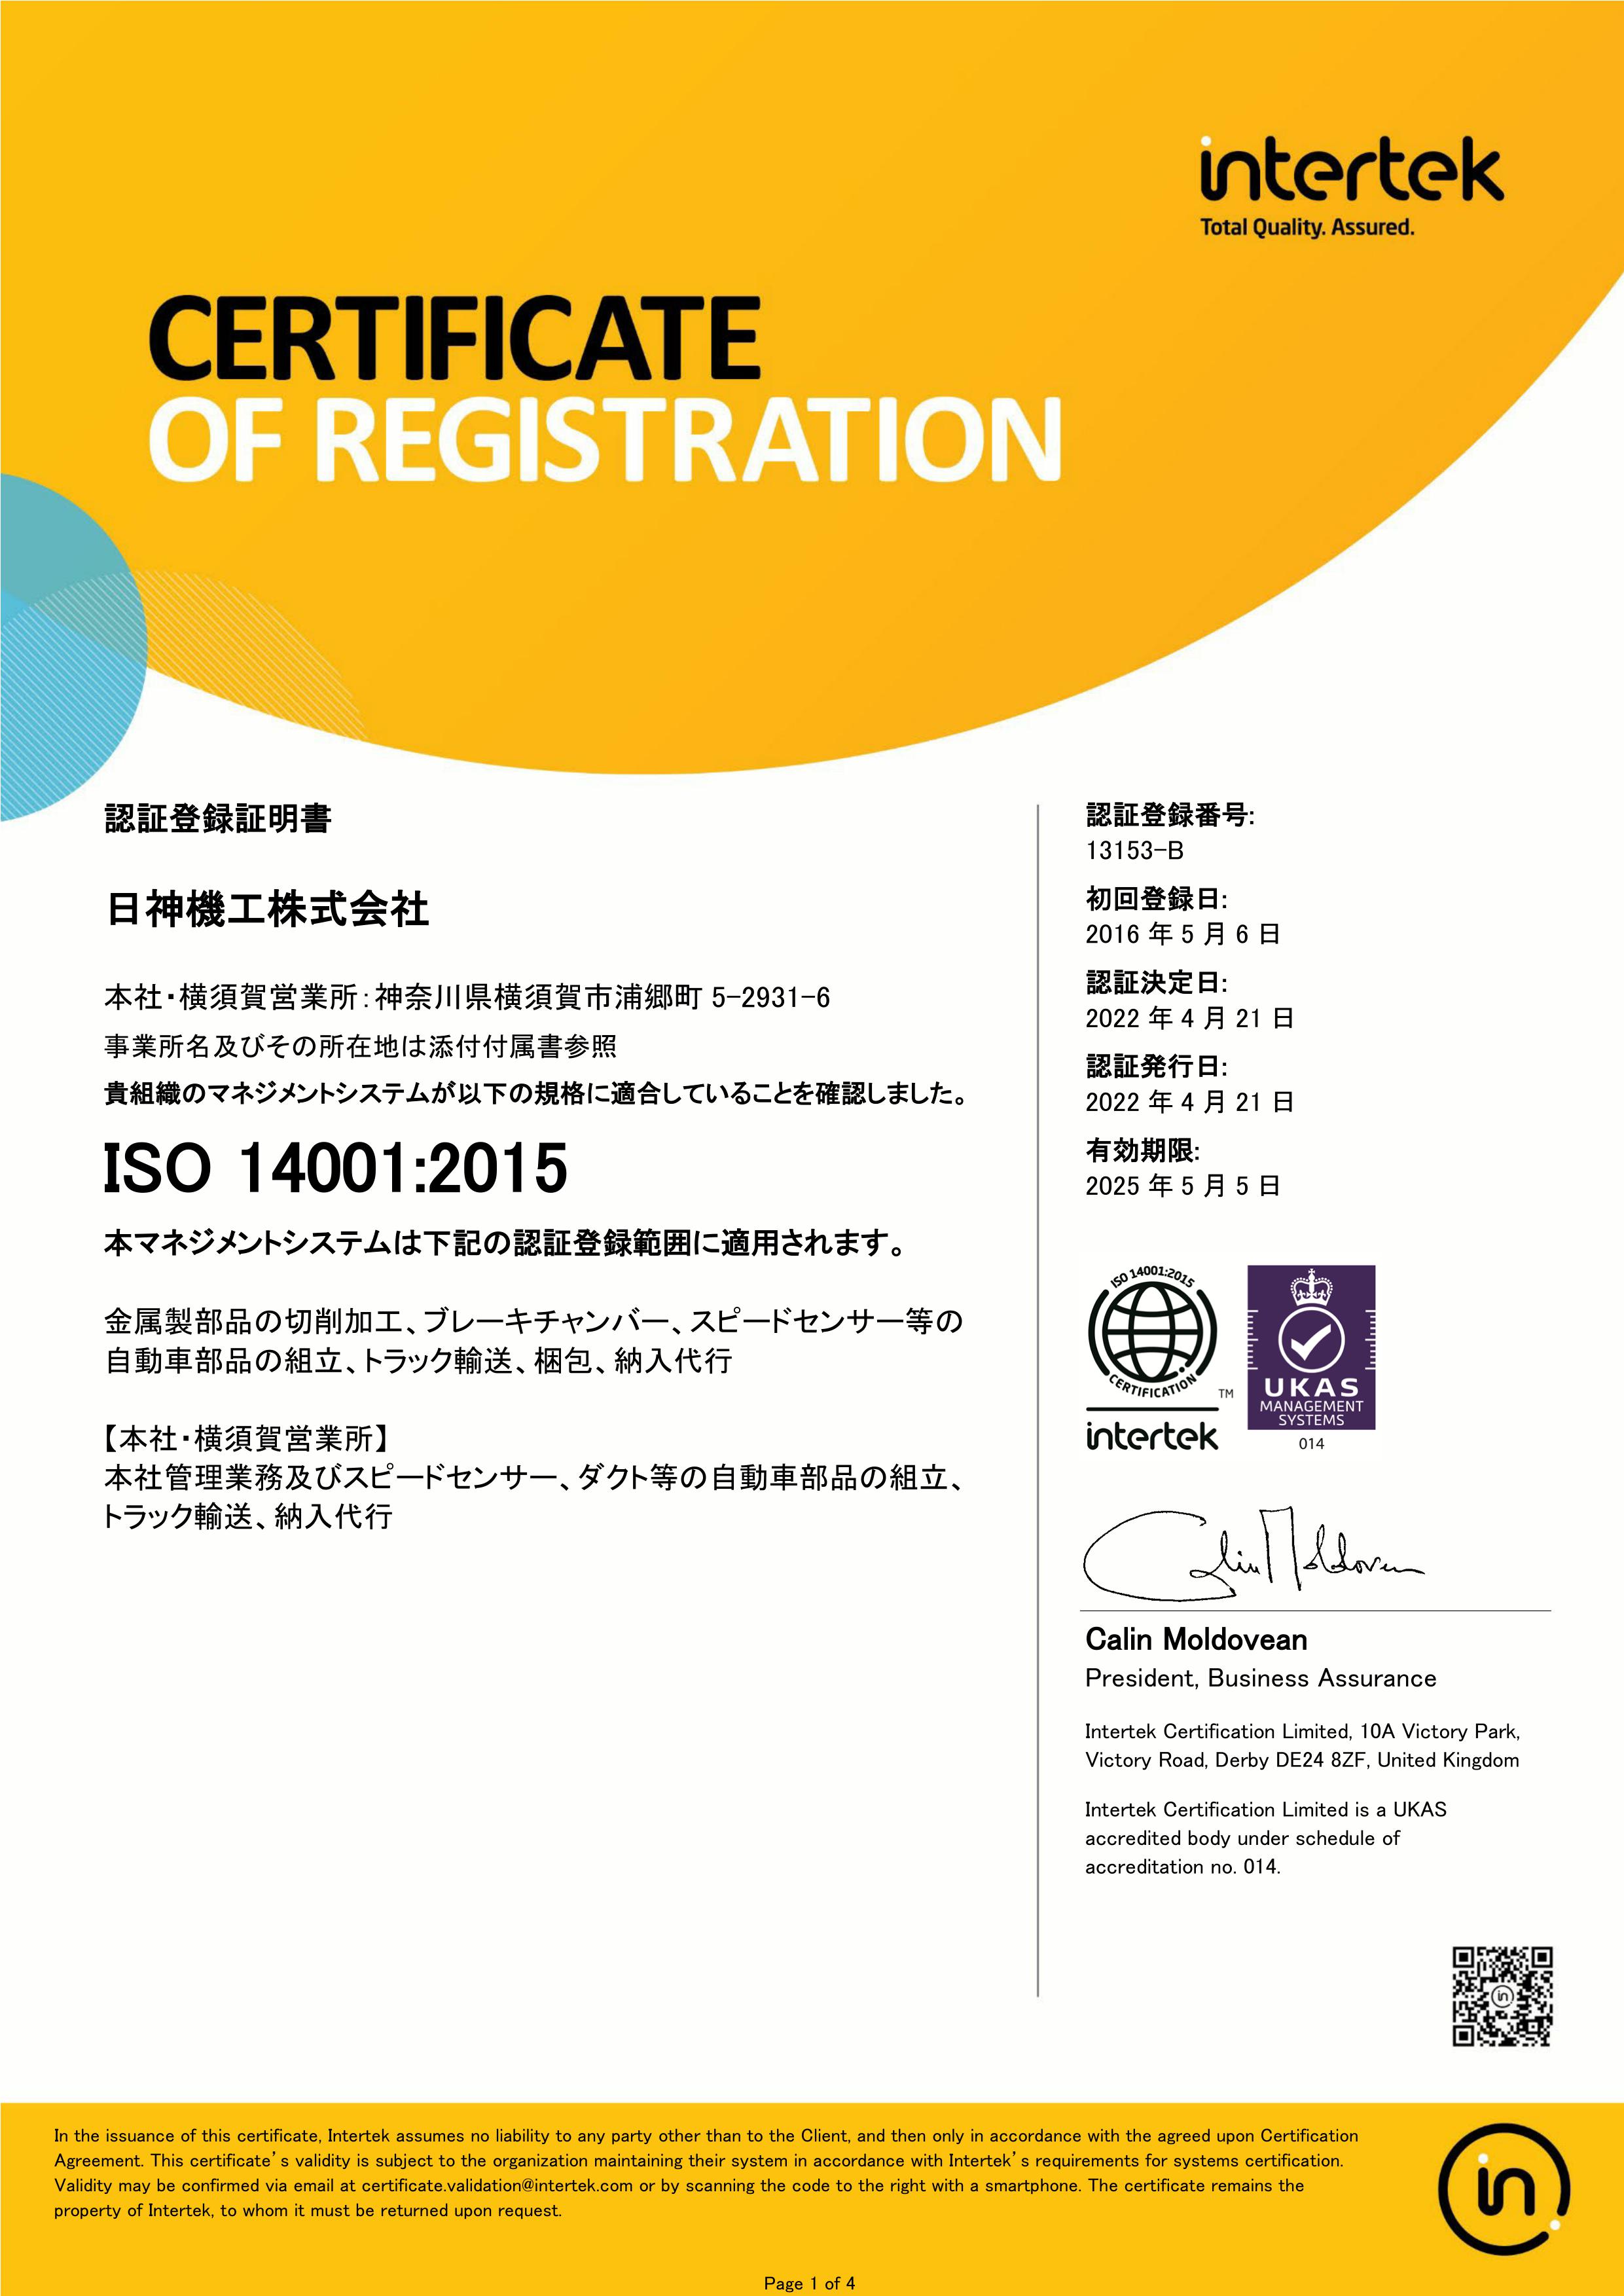 ISO14001登録証4分の1ページ目を表示しております